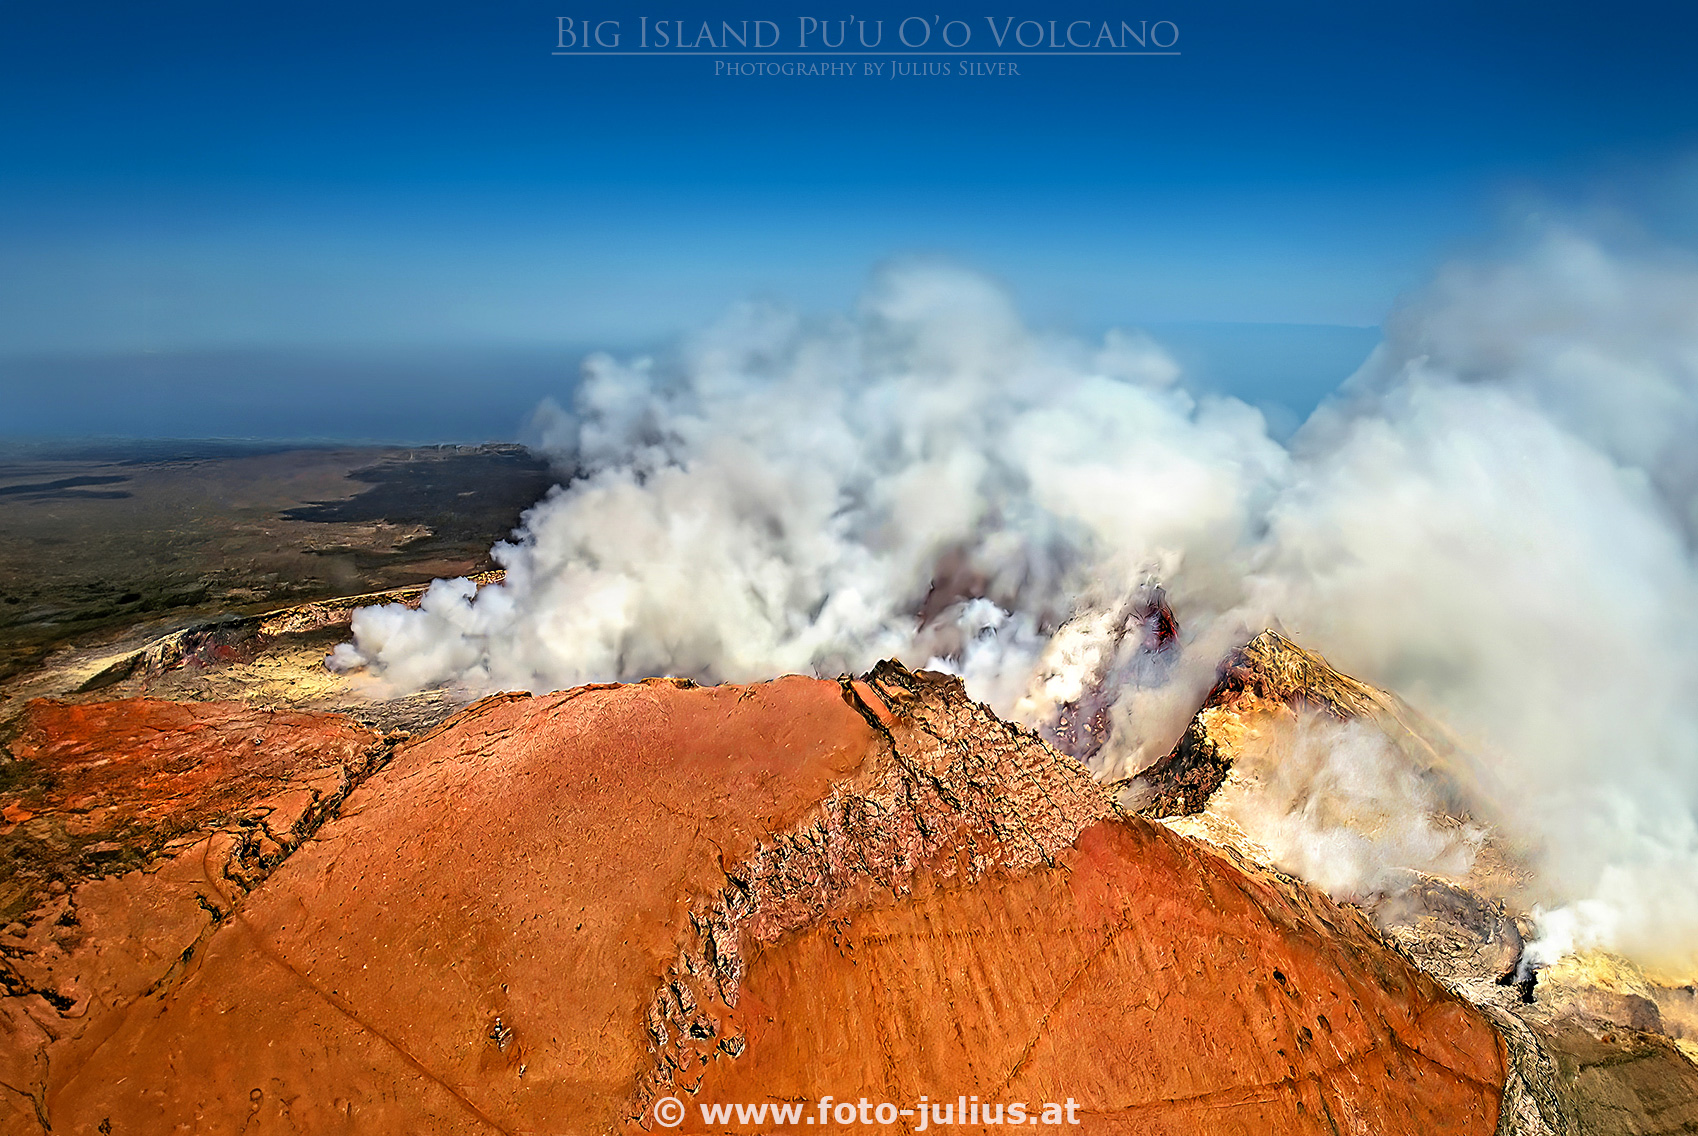 haw070a_Big_Island_PuuOo_Volcano.jpg, 414kB